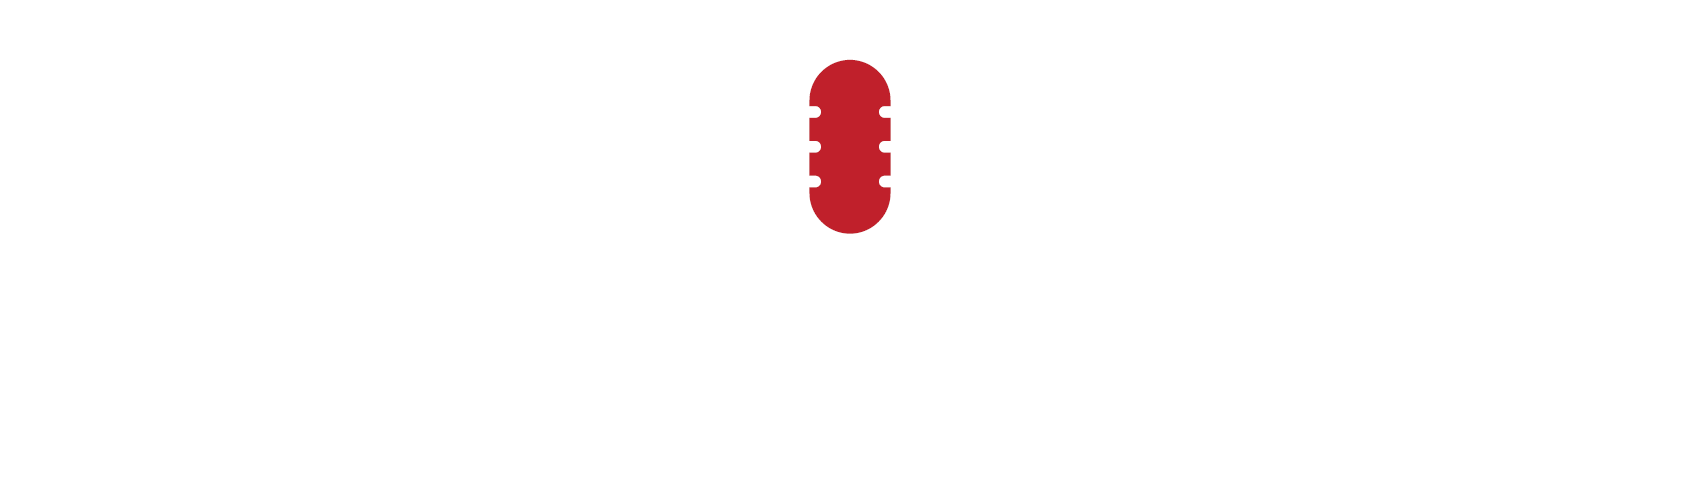 LSH Talks